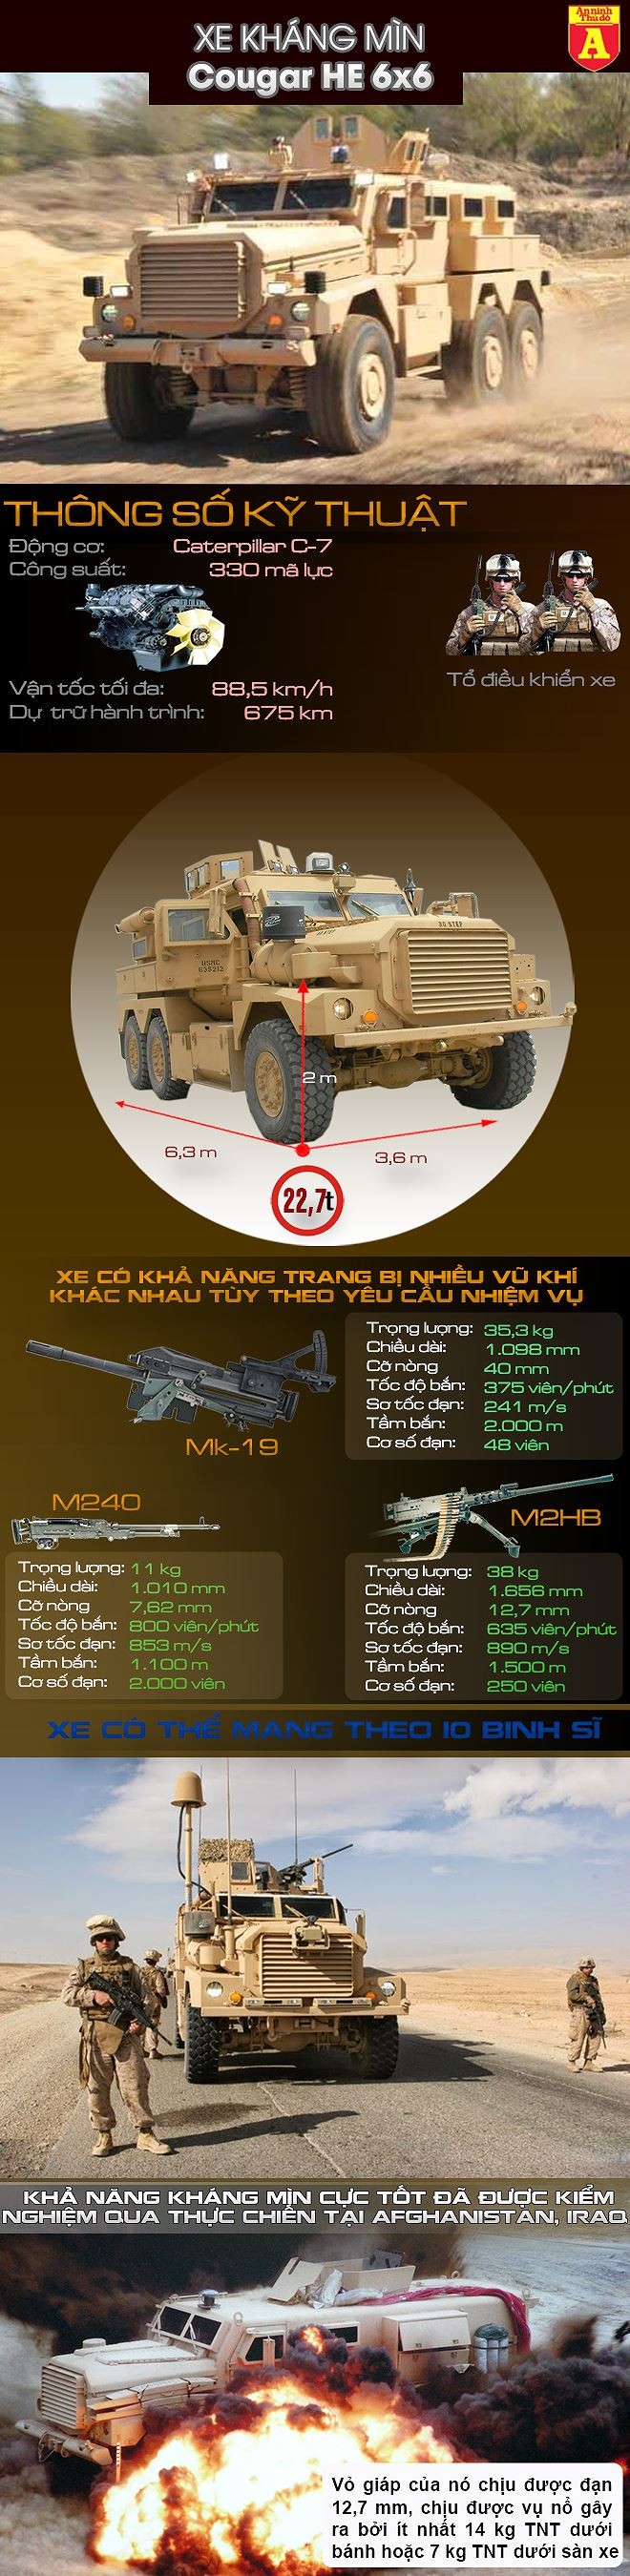 [Infographic] Mỹ vừa điều thêm vũ khí hạng nặng tới Syria ảnh 2